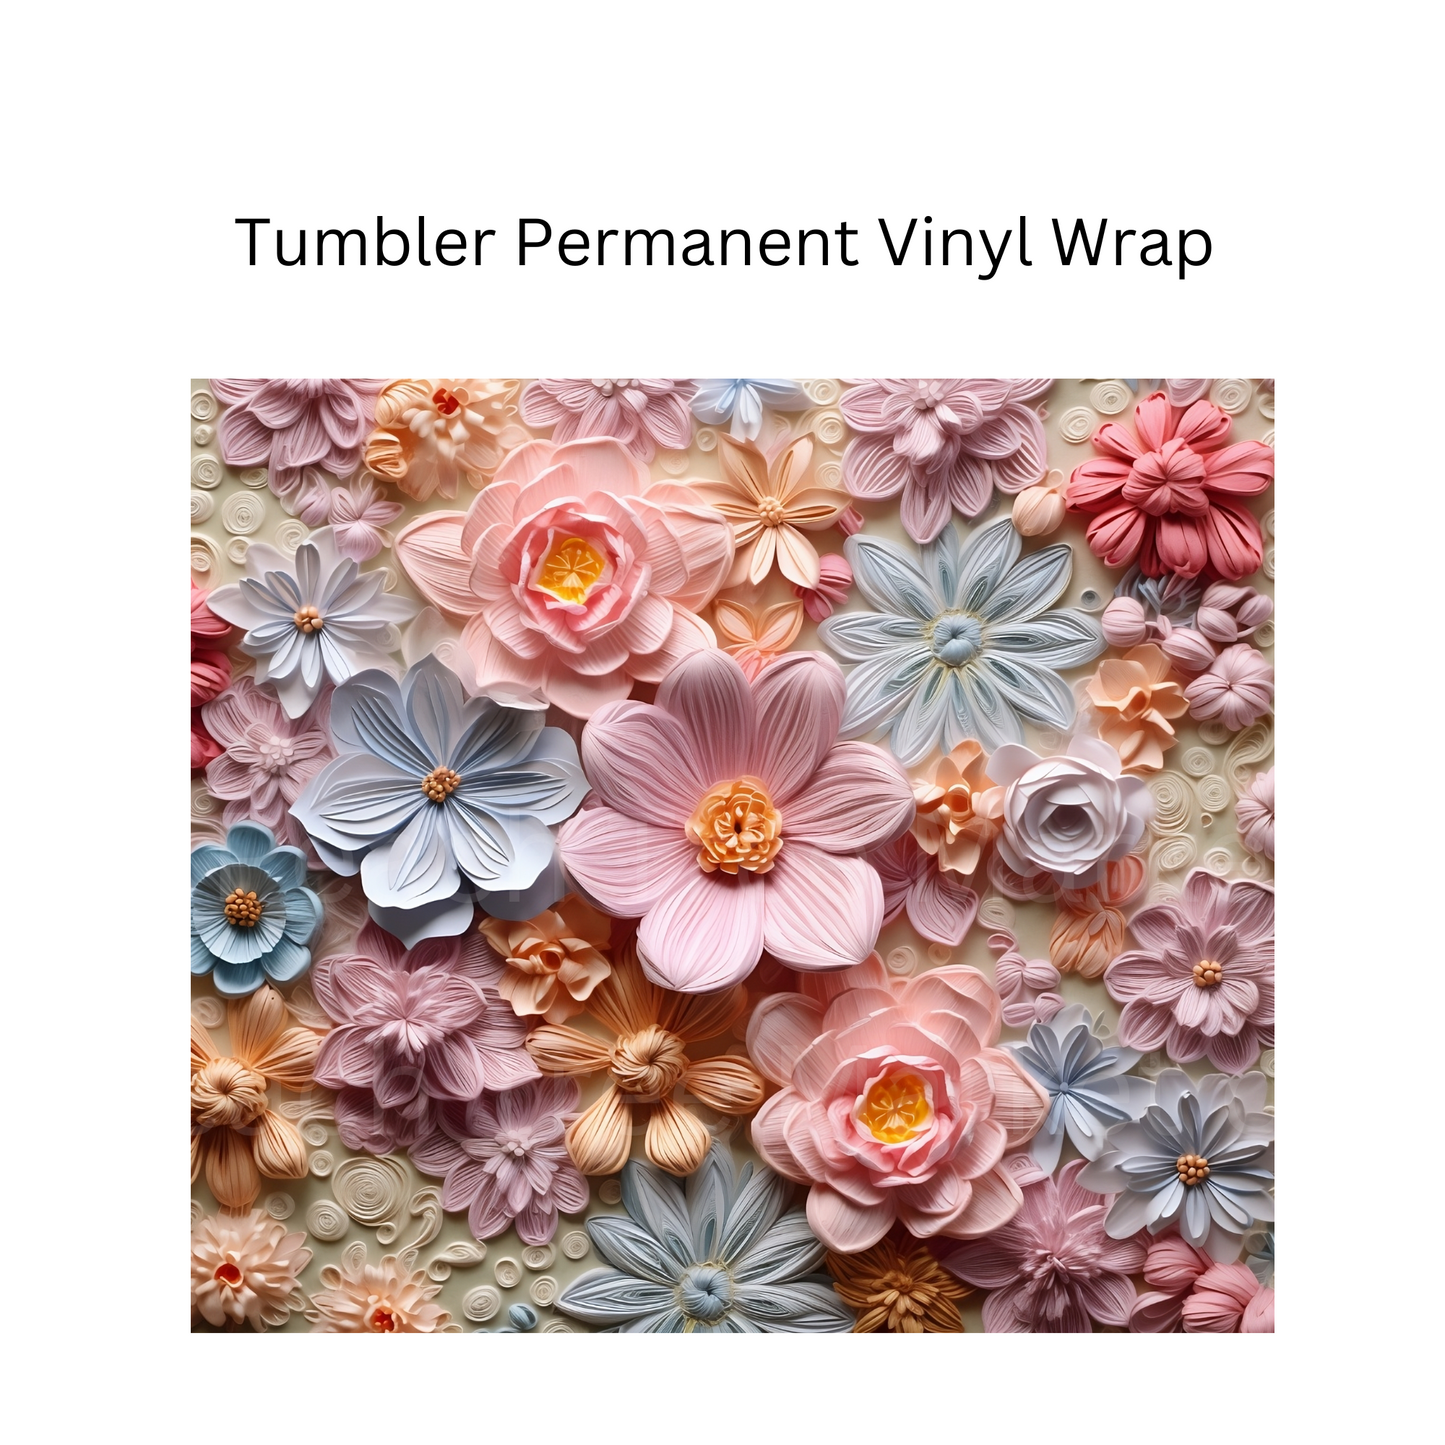 3D Flowers - 1 Permanent Vinyl Wrap